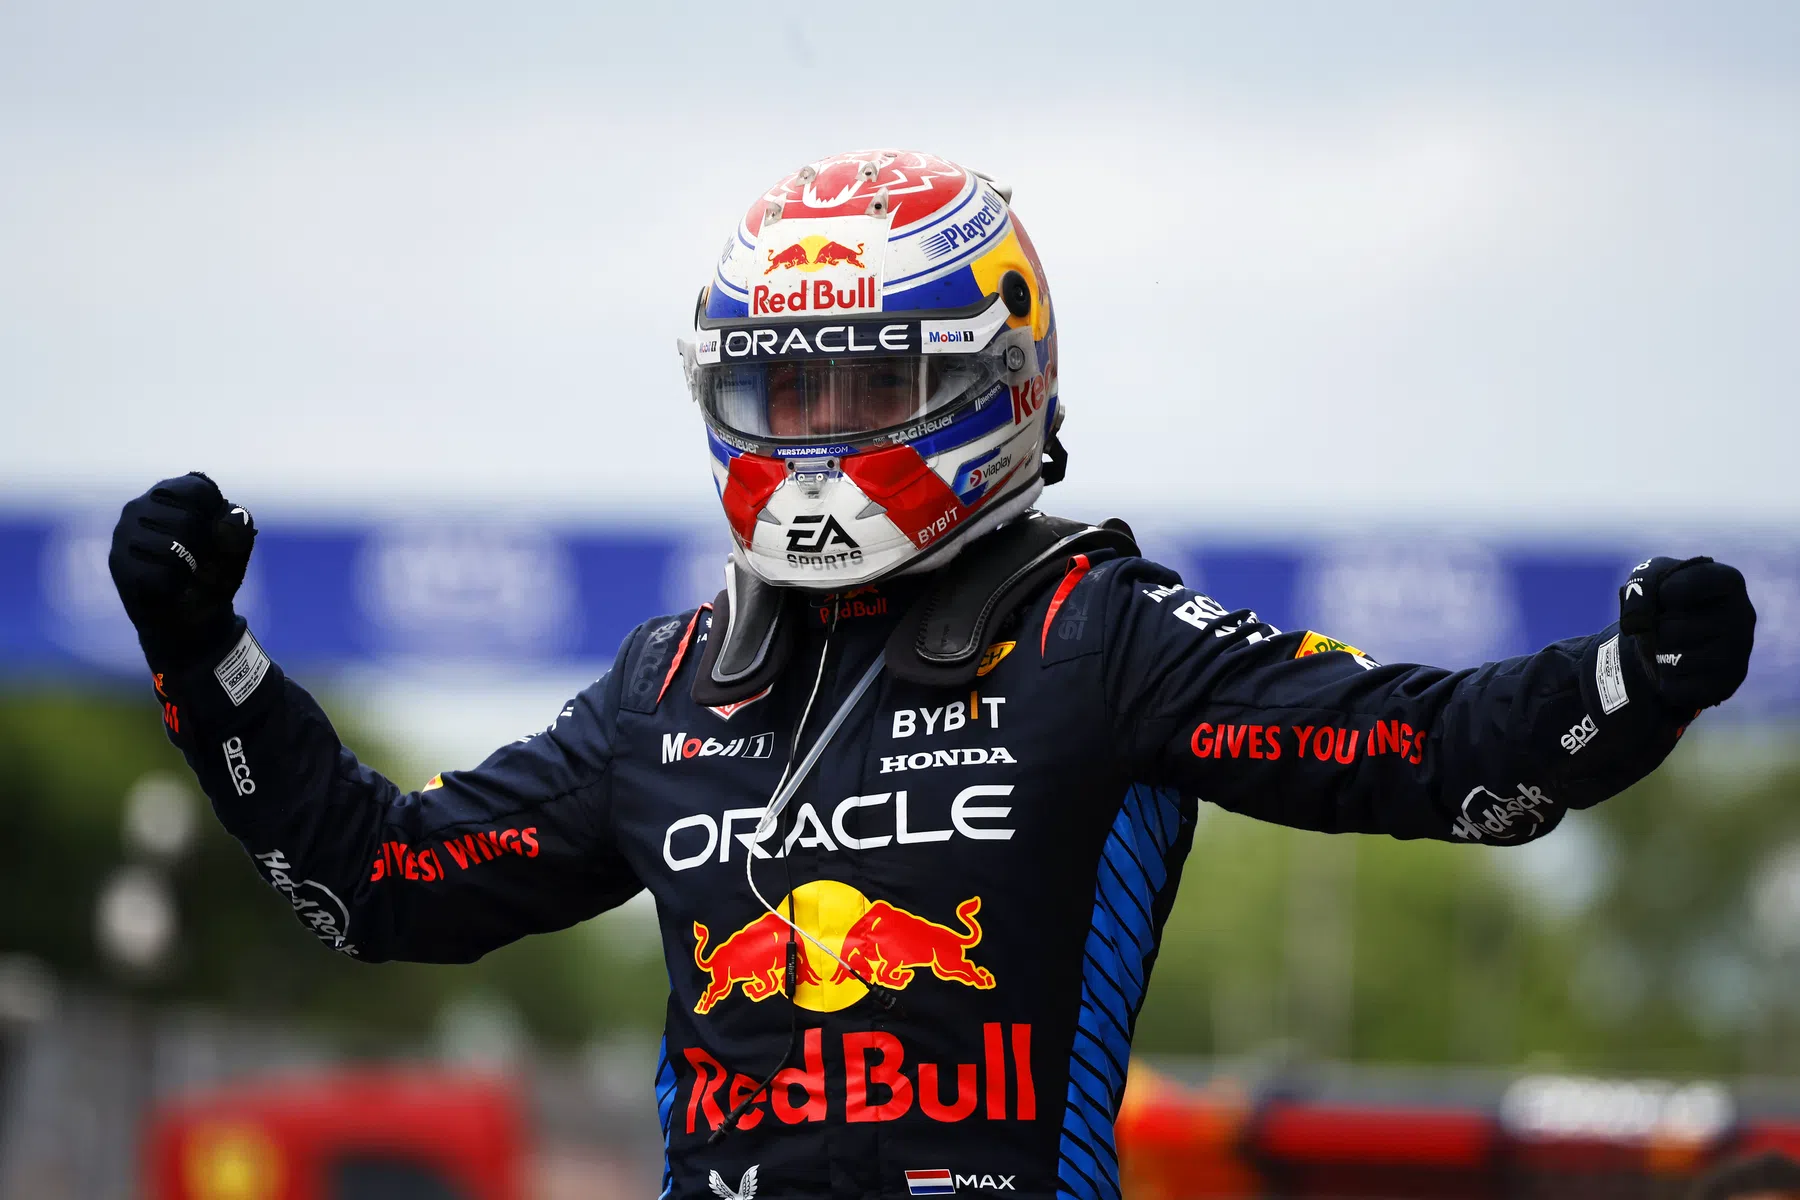 Highest mark for Verstappen after Canadian Grand Prix